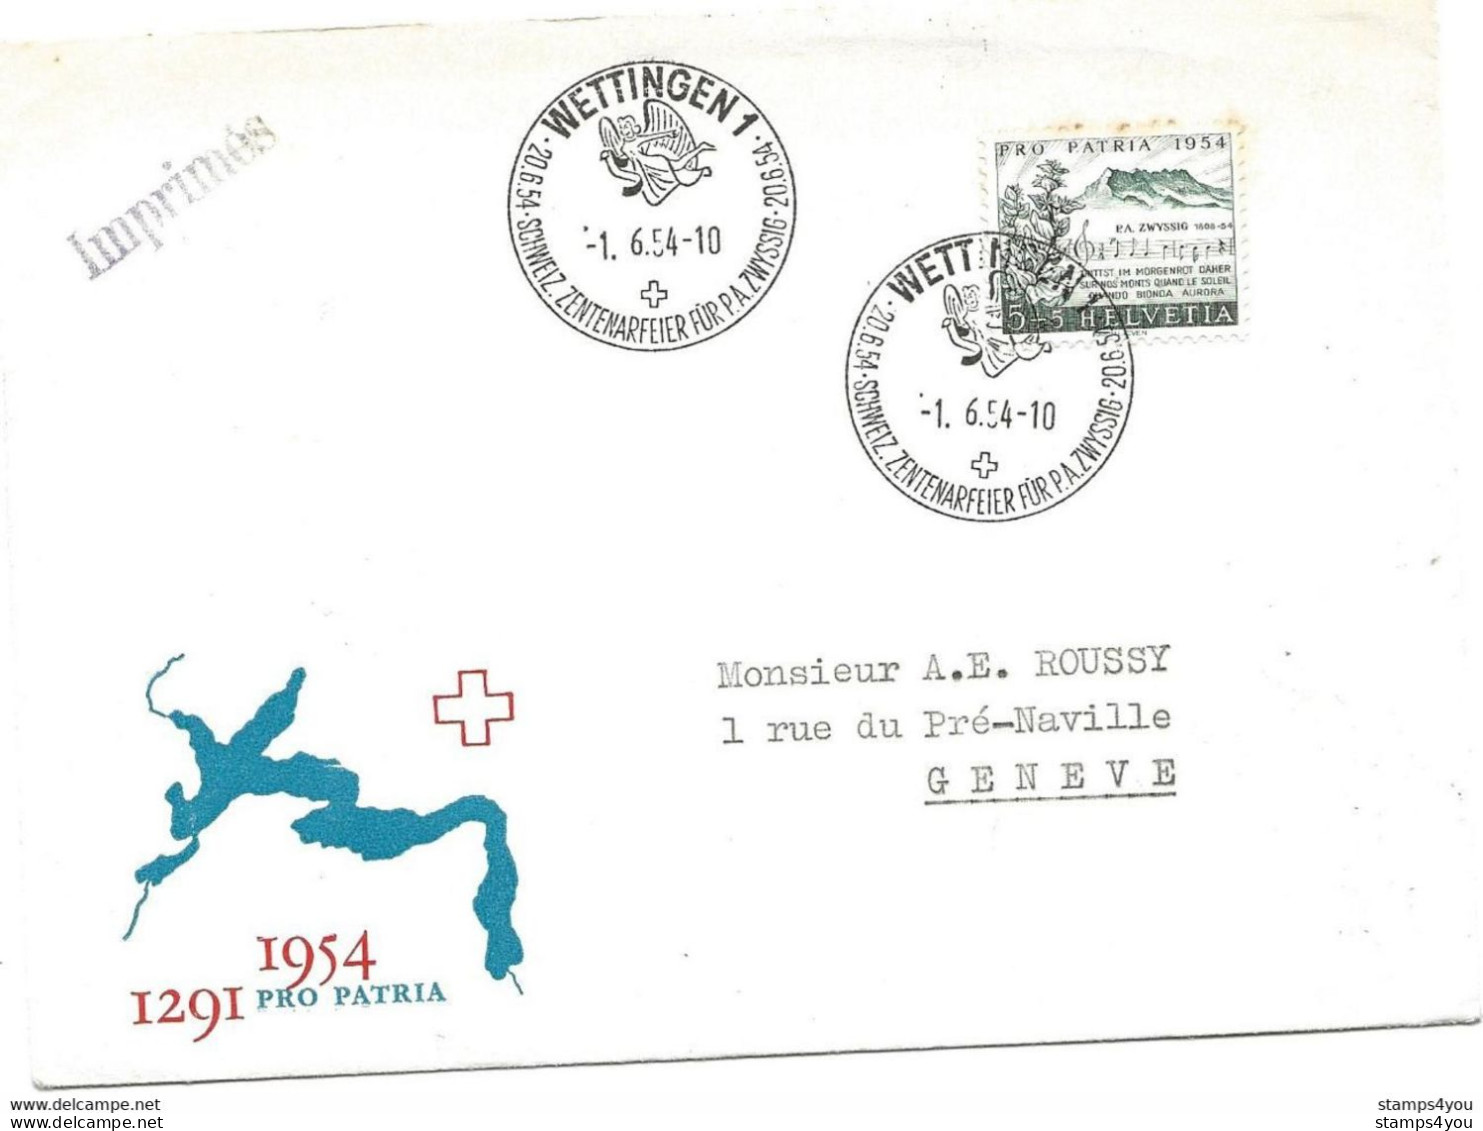 125 - 7 - Enveloppe Avec Oblit Spéciale "Wettingen Schweiz. Zenterarfeier Für PA Zwyssig 1954" - Poststempel